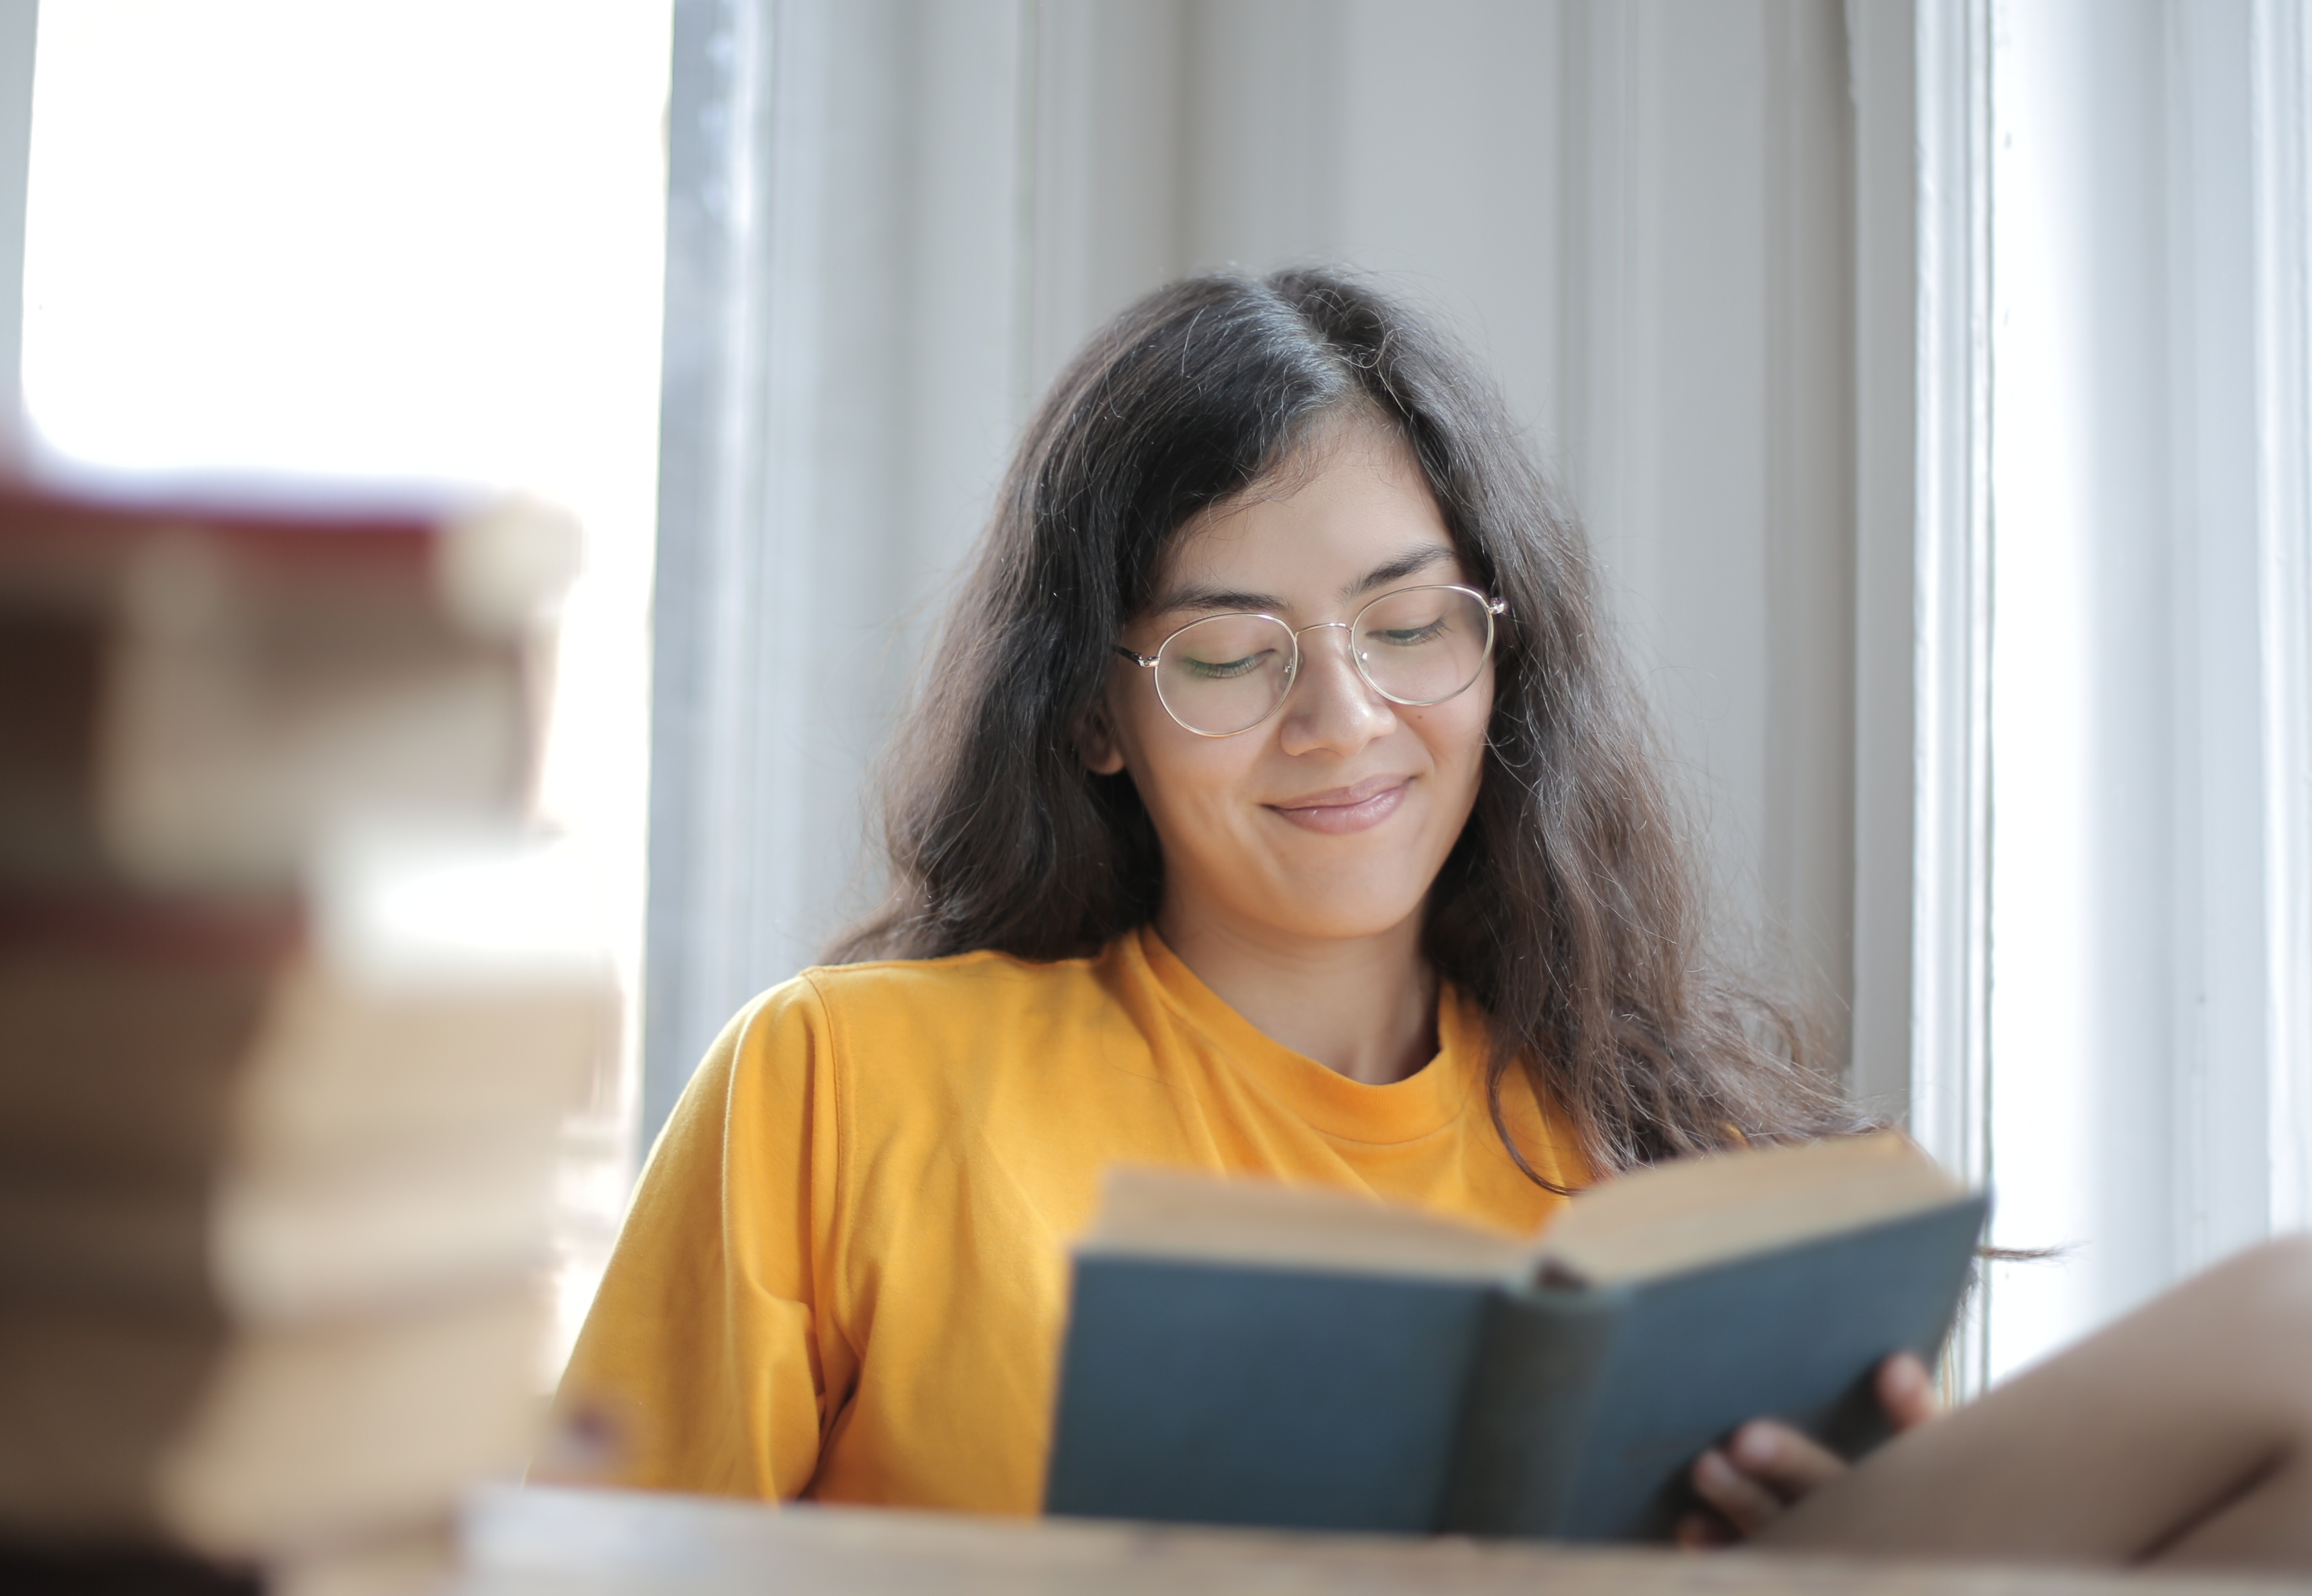 Mulher lendo livro e sorrindo. Imagem ilustrativa texto alívio cômico.